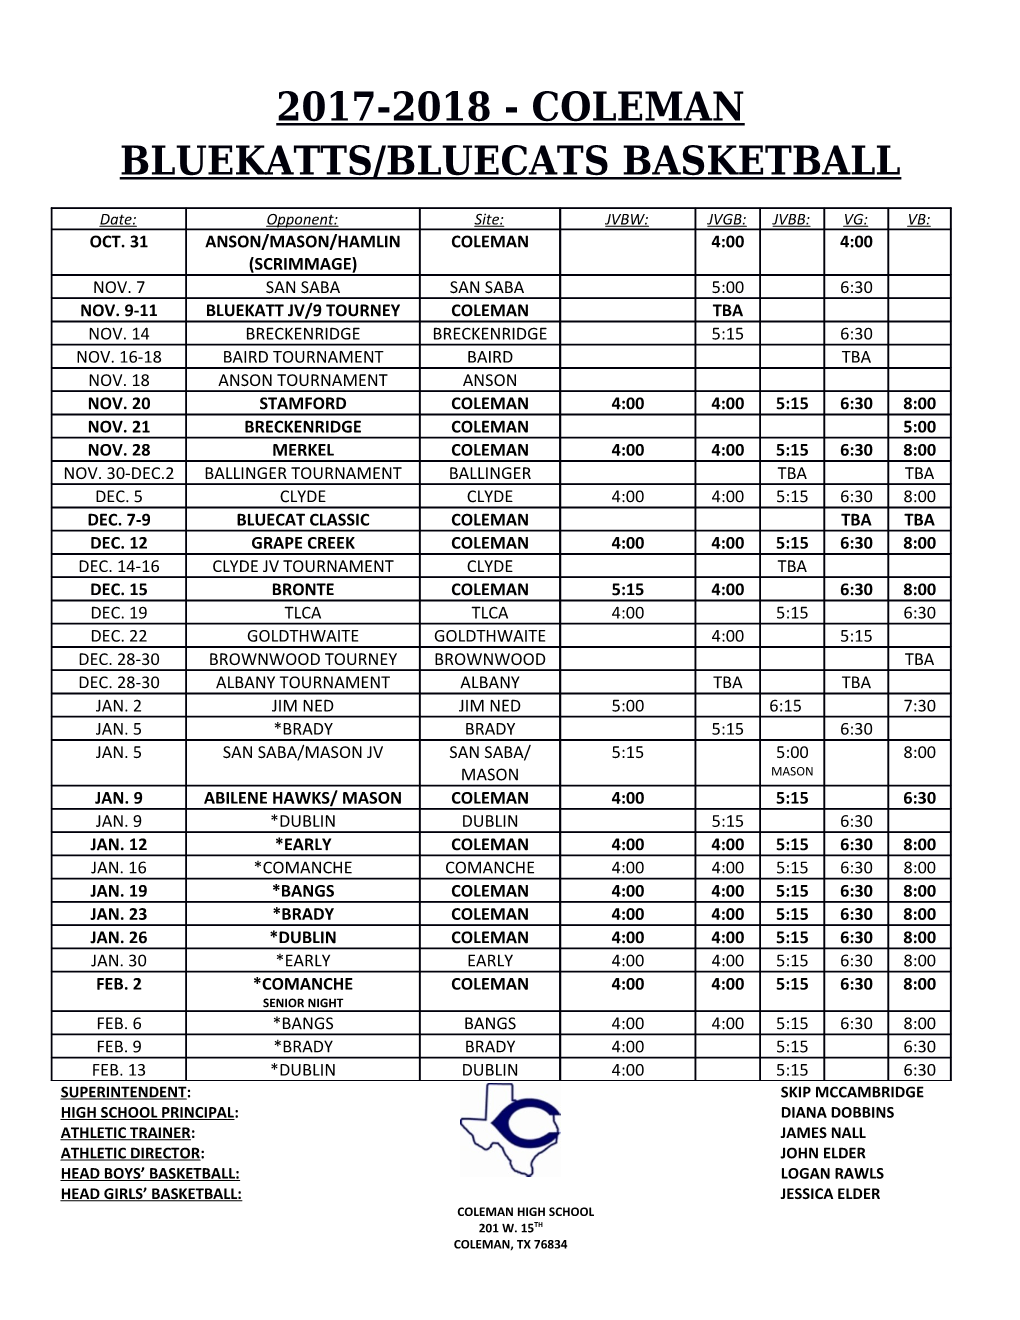 2017-2018 - Coleman Bluekatts/Bluecats Basketball